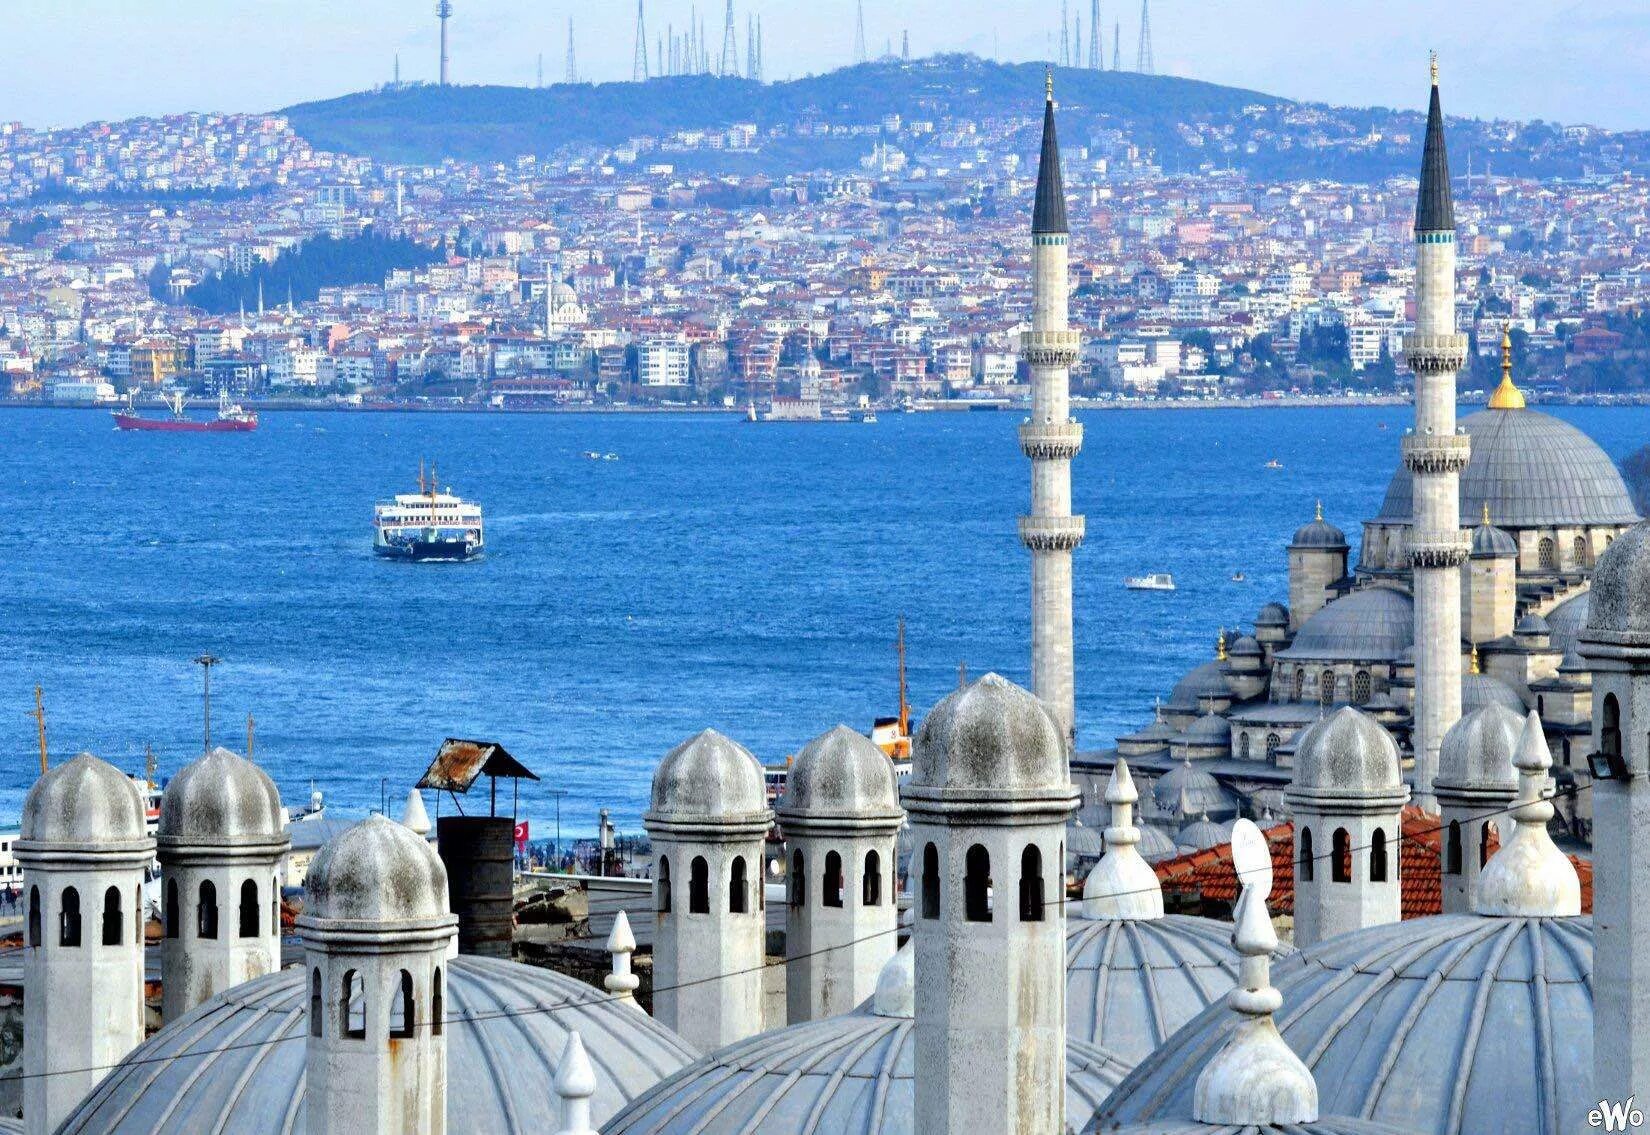 Город султанахмет. Стамбул Турция. Турция Истамбул. Туризм в Турции Стамбул. Турция стамбулфото город.